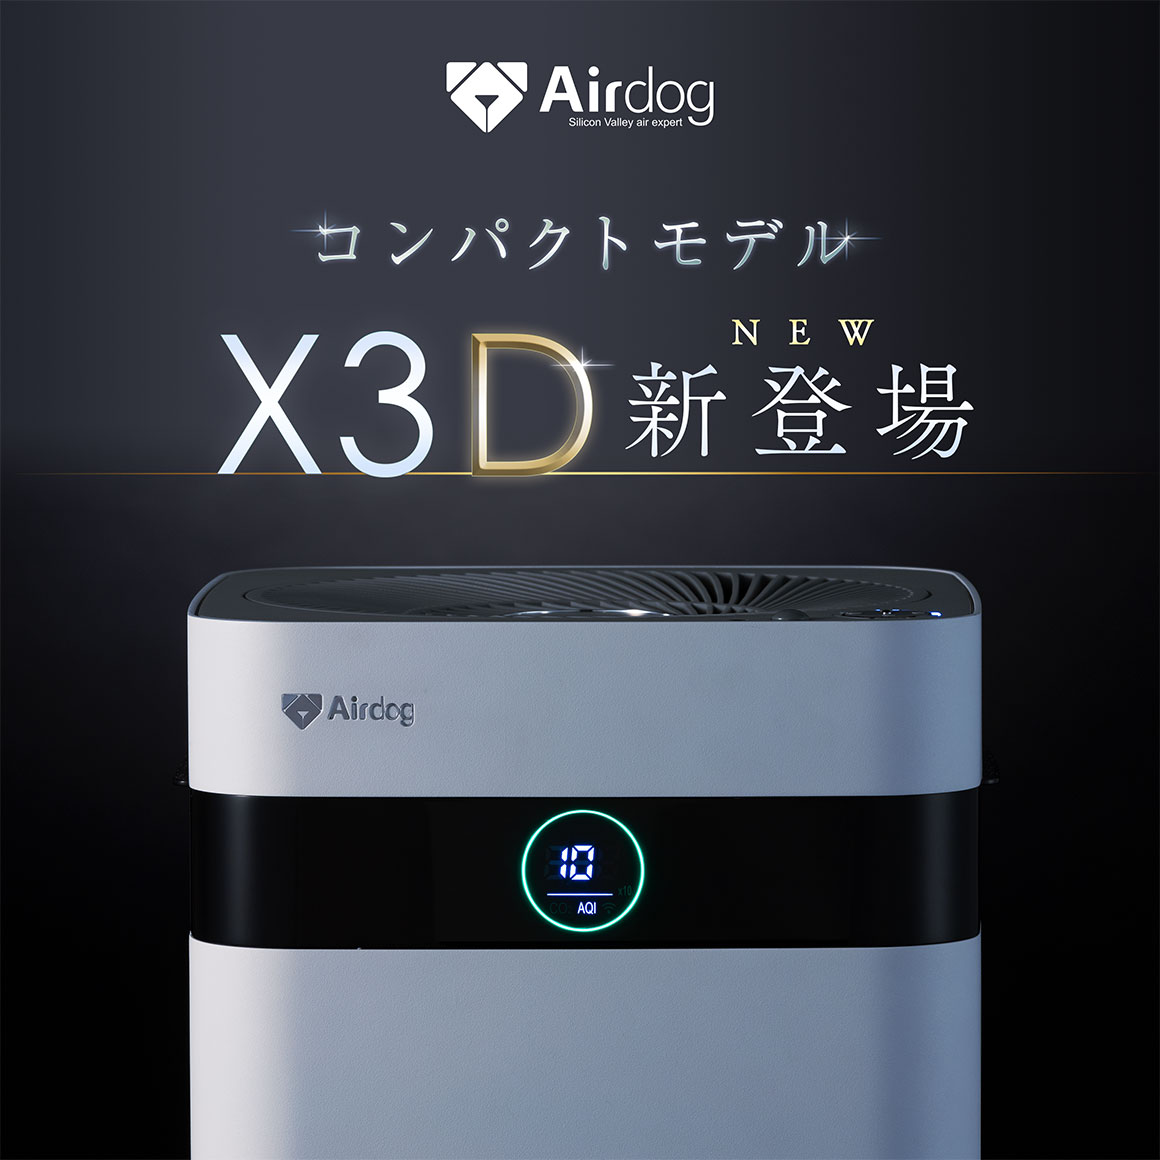 本日価格✴︎新品✴︎エアドッグ Airdog X3D-